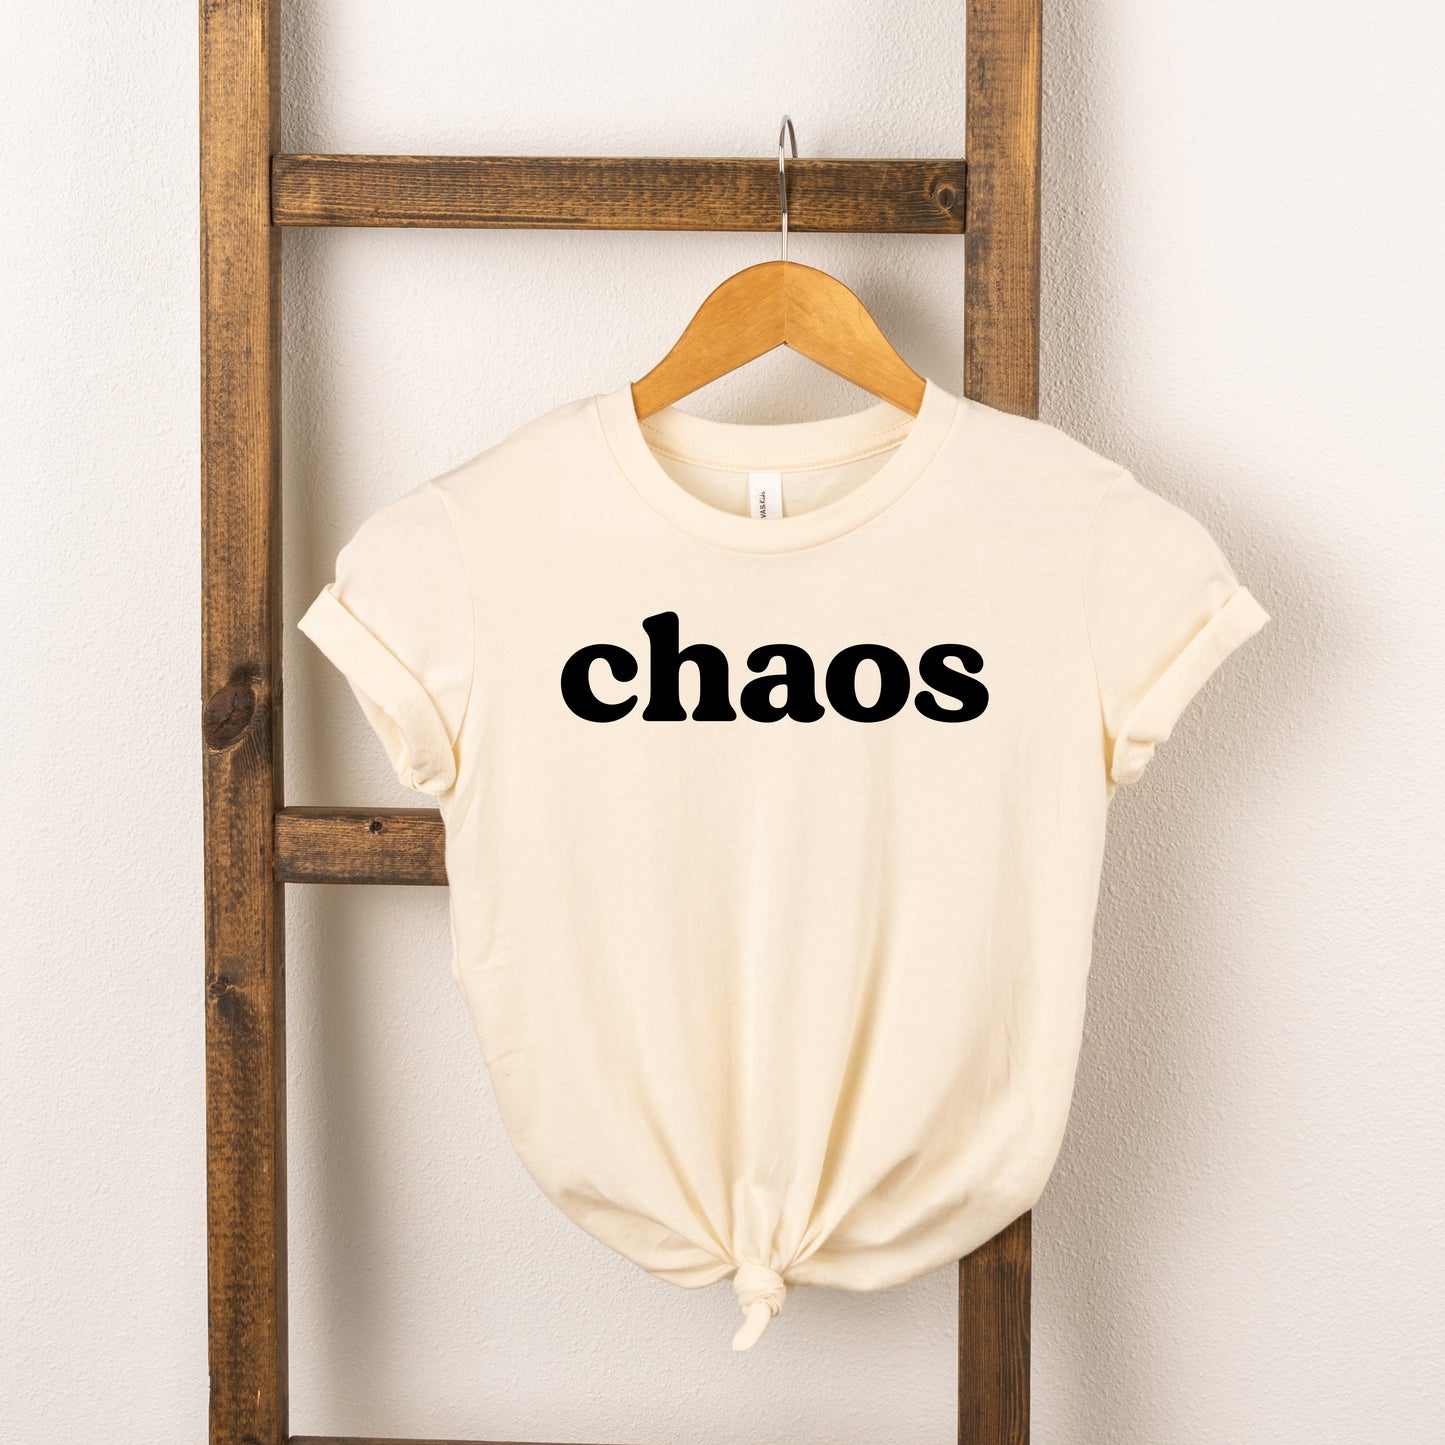 Chaos Follows Me Everywhere / Chaos